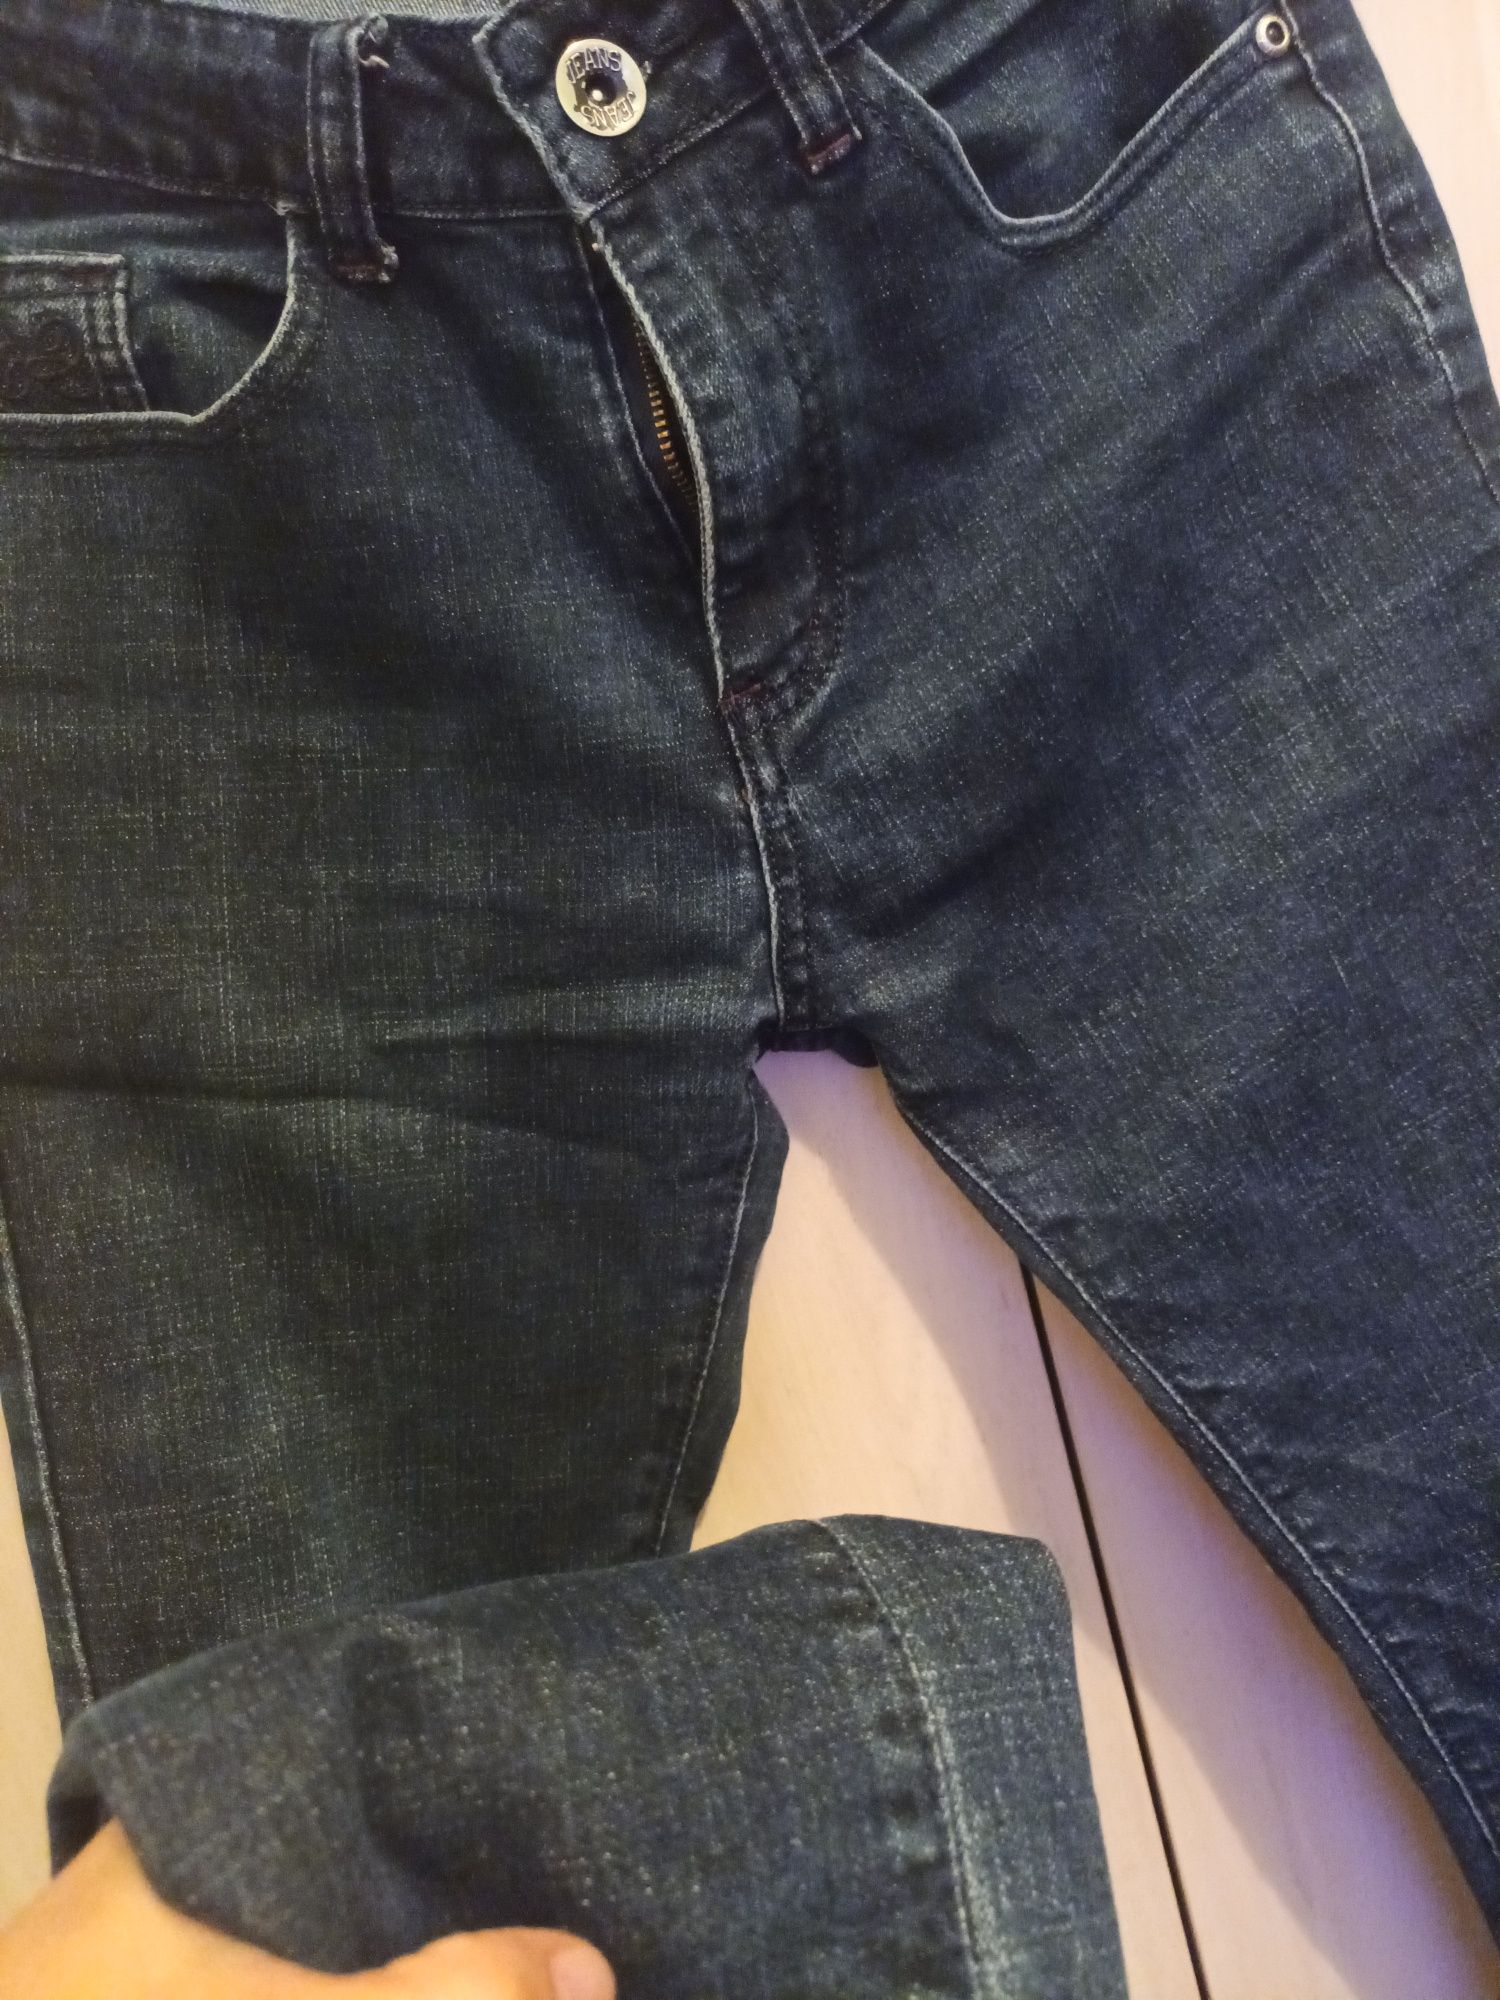 Мужская Рубашка и джинсовые брюки размер С